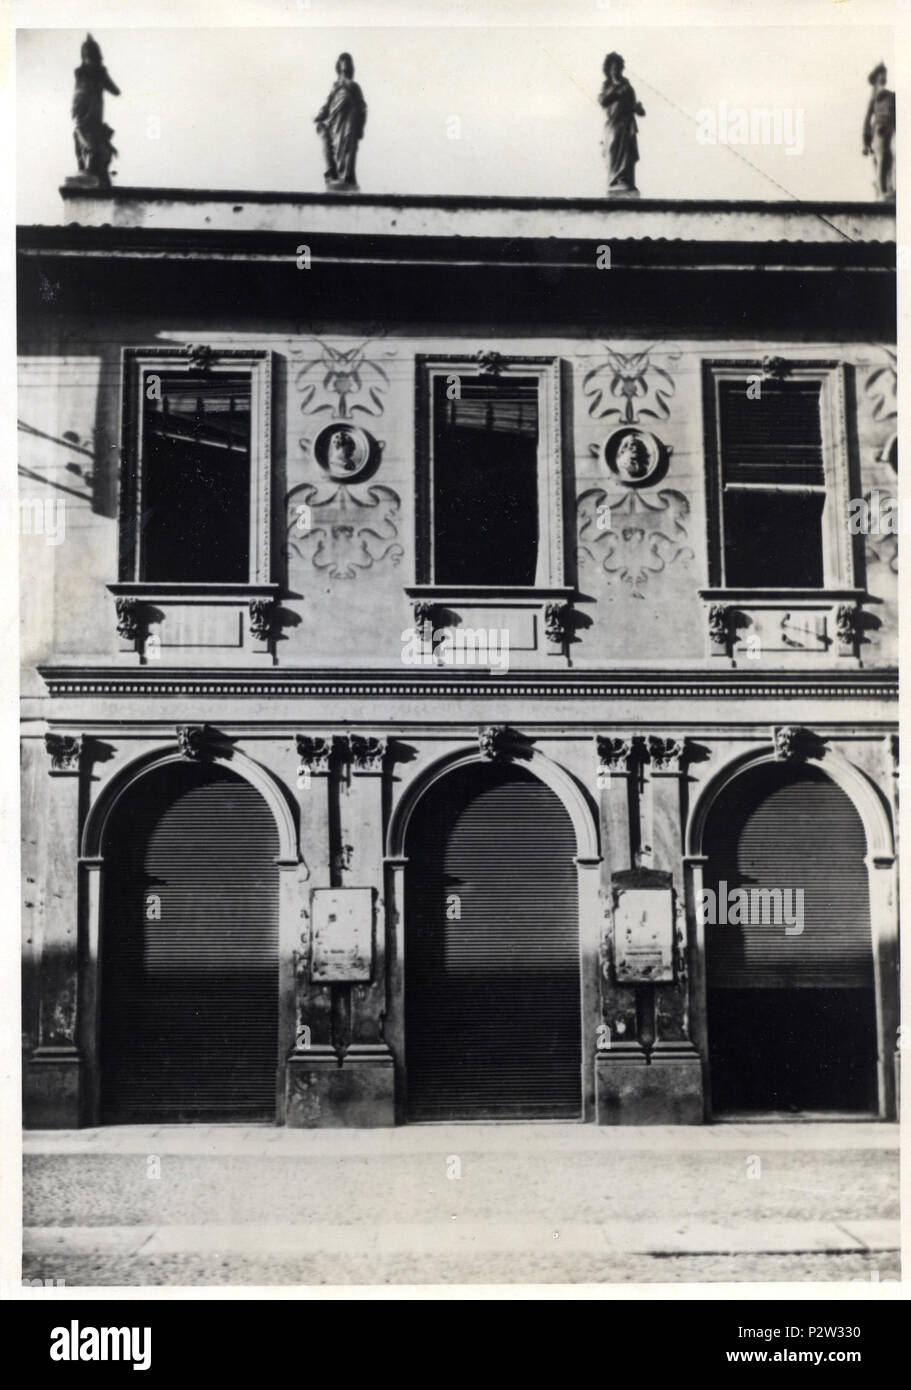 . Italiano : Lodi, la facciata del Teatro Sociale (demolito nel 1939). avant 1939. Foto Tronchini 48 Lodi - Teatro Sociale - facciata Banque D'Images